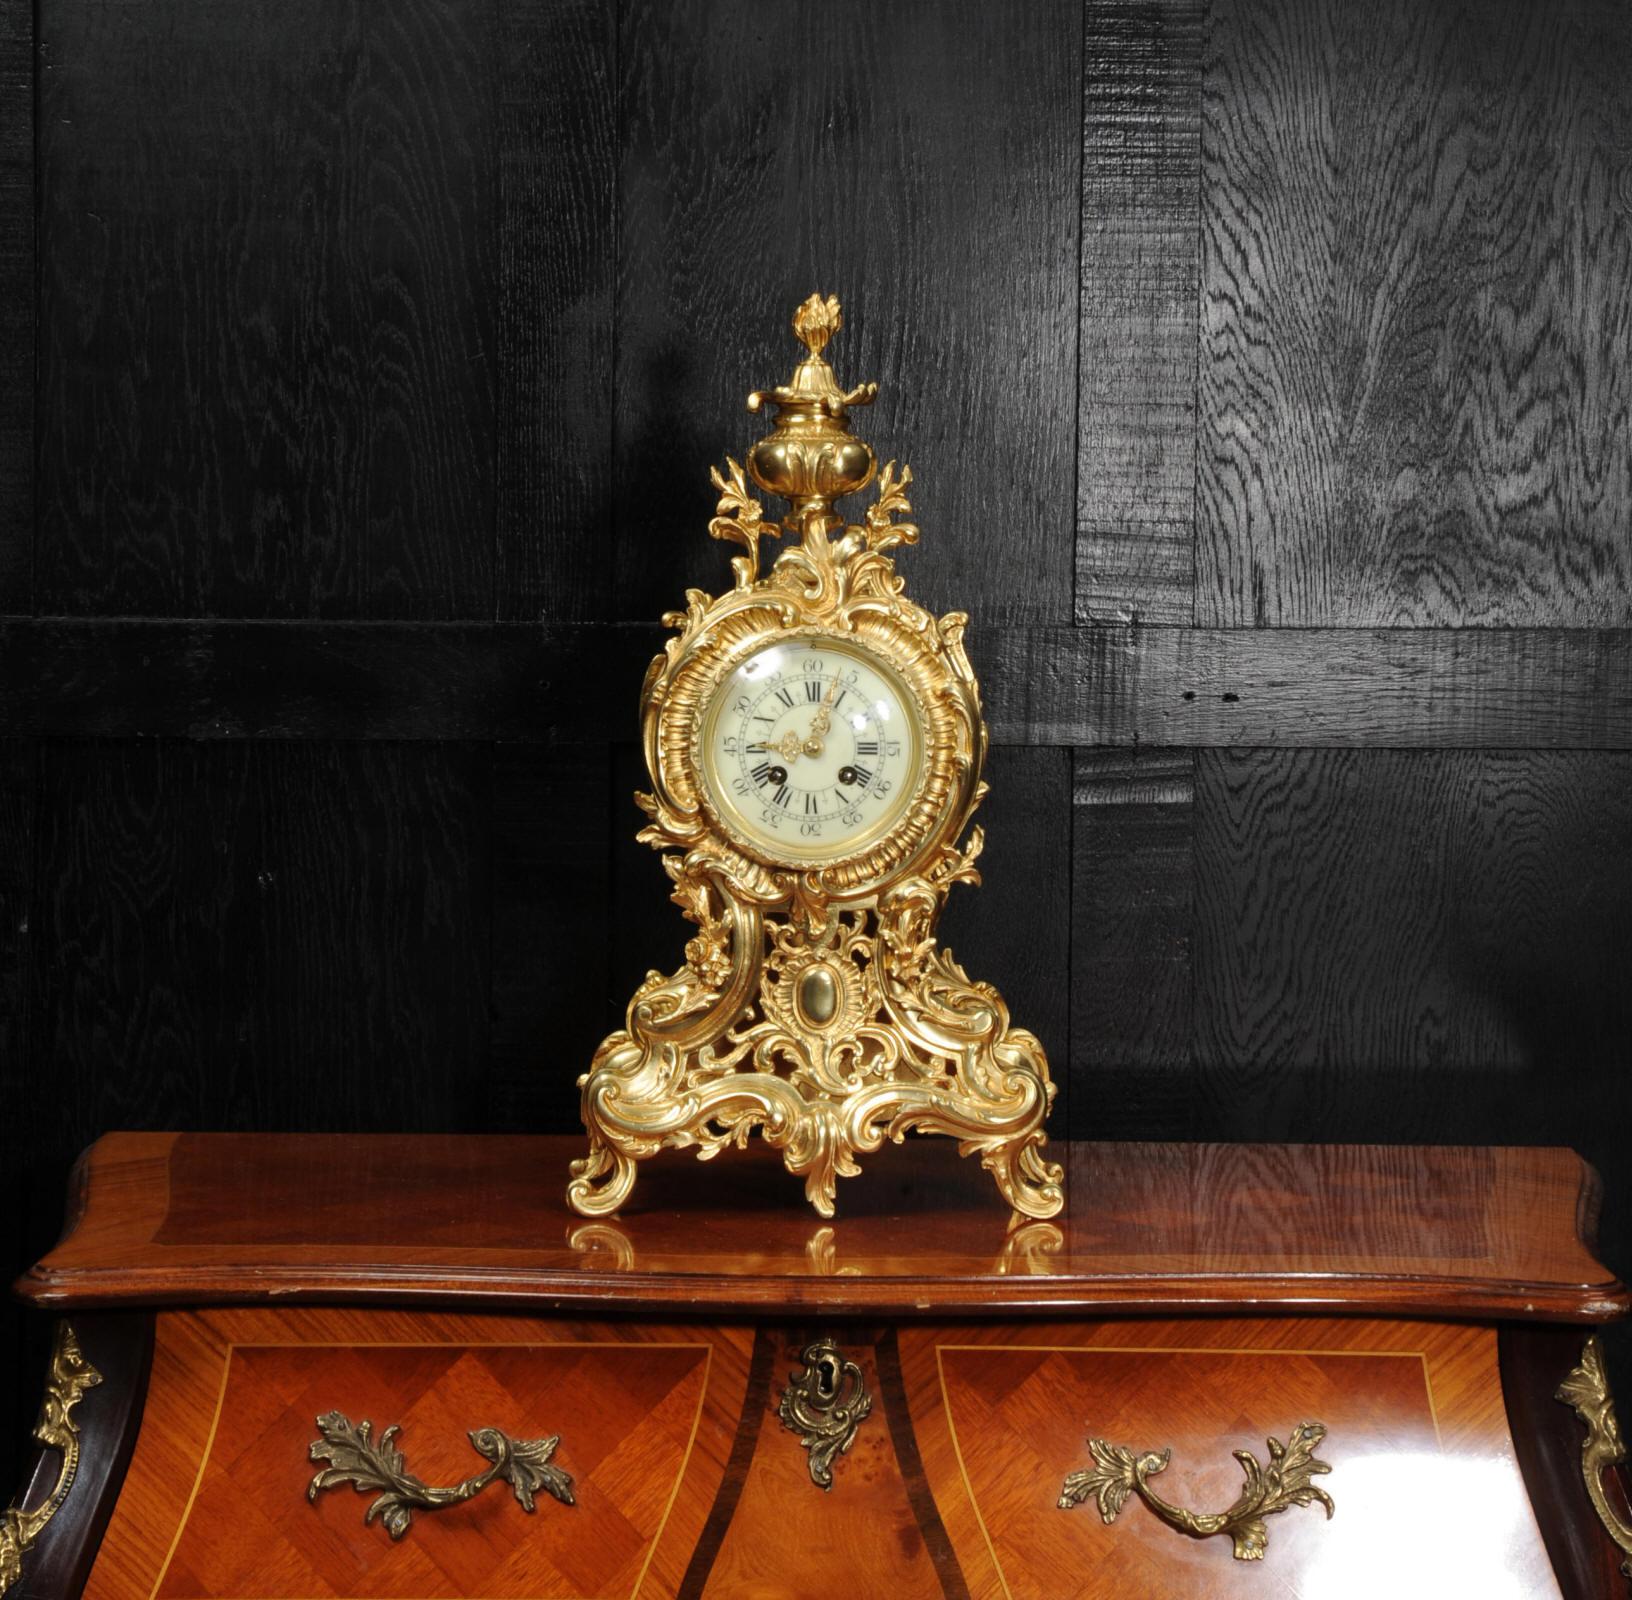 Eine große, prächtige und sehr dekorative original antike französische Uhr aus der Zeit um 1900. Sie ist im Stil des Rokoko in feiner vergoldeter Bronze ausgeführt. Tailliertes Gehäuse, reich verziert mit Akanthusblättern und 